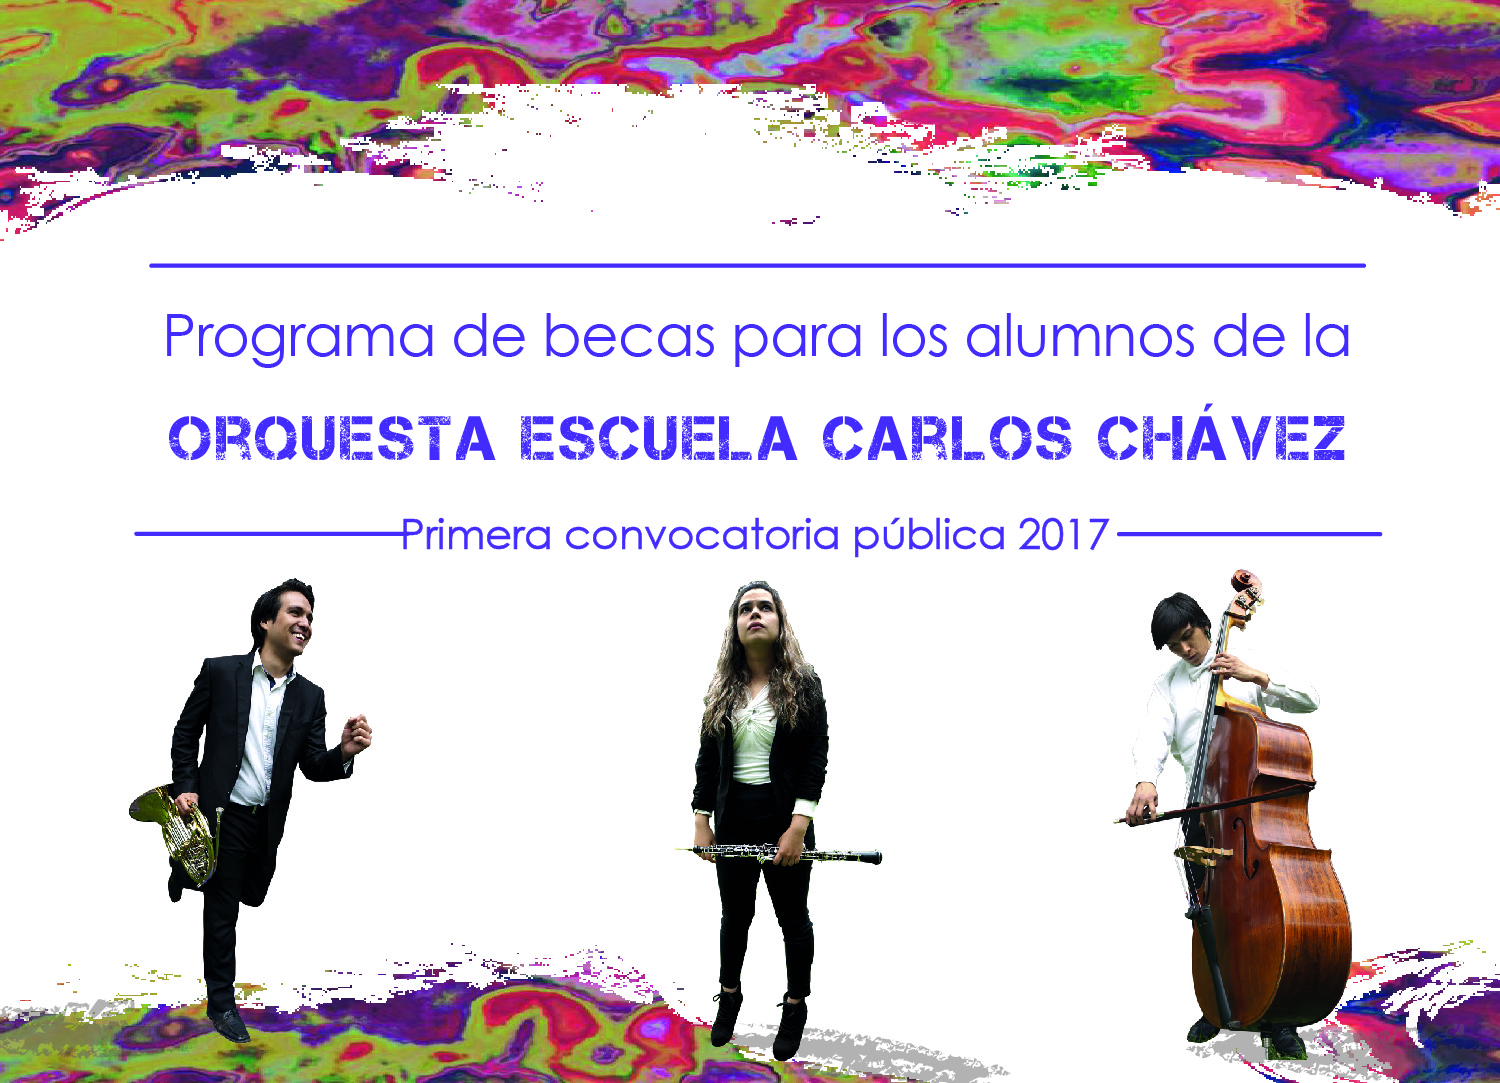 Programa de becas para los alumnos de la Orquesta Escuela Carlos Chávez.